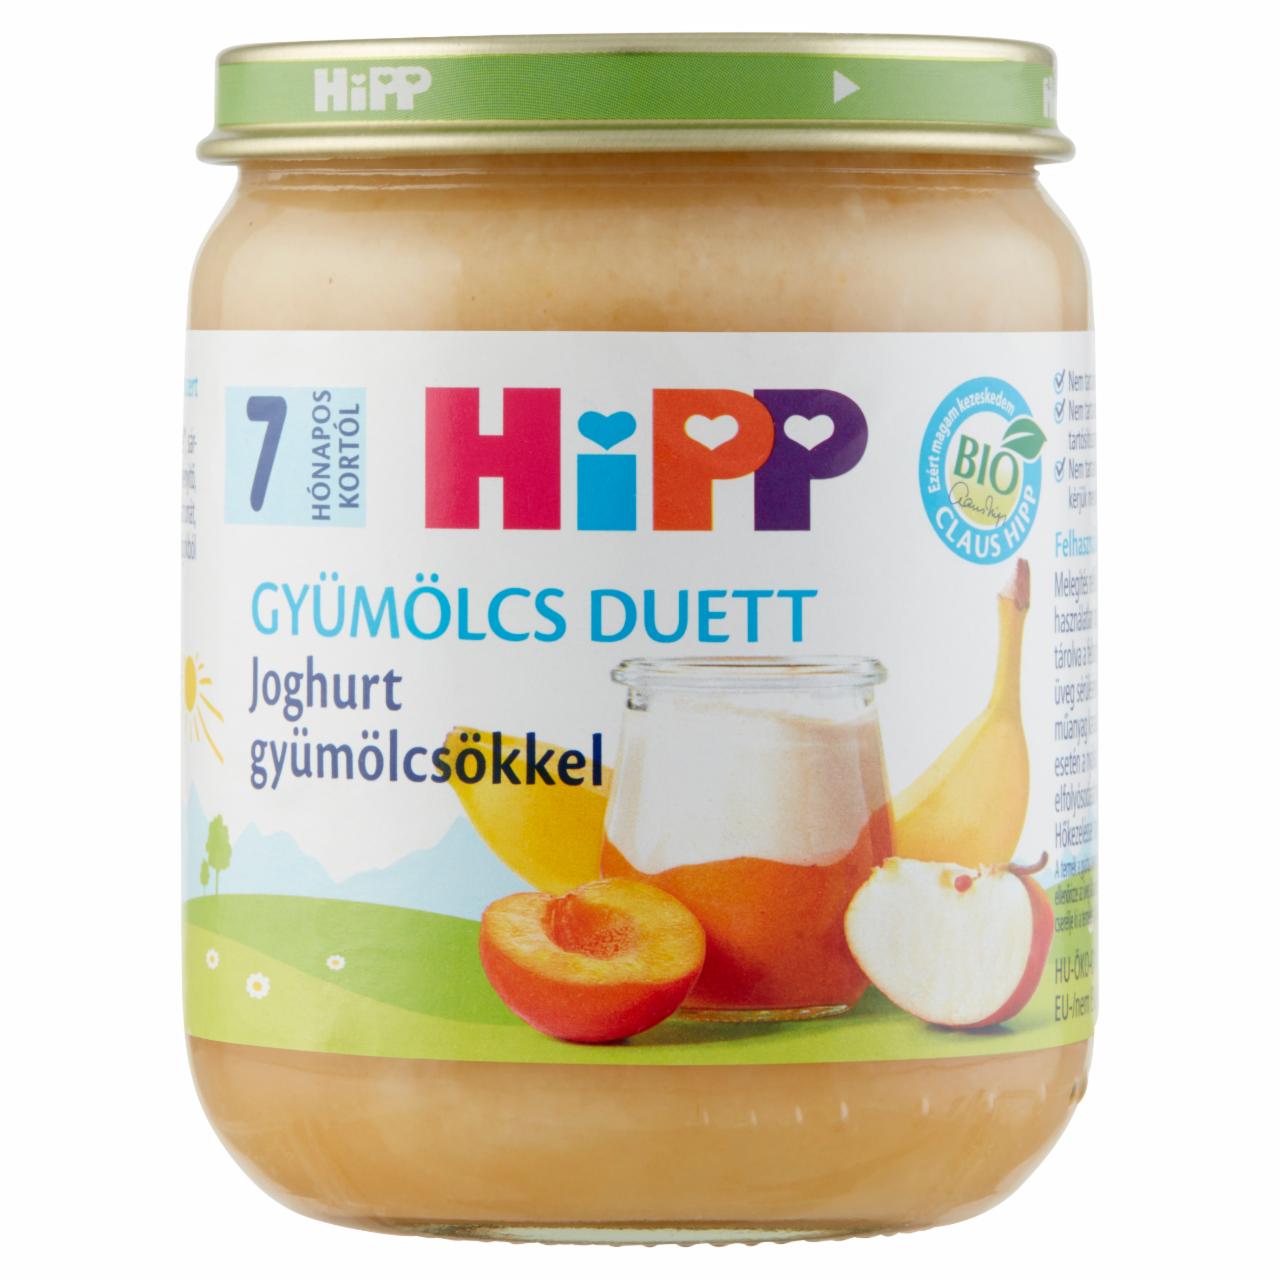 Képek - HiPP Gyümölcs Duett BIO joghurt gyümölcsökkel bébidesszert 7 hónapos kortól 160 g